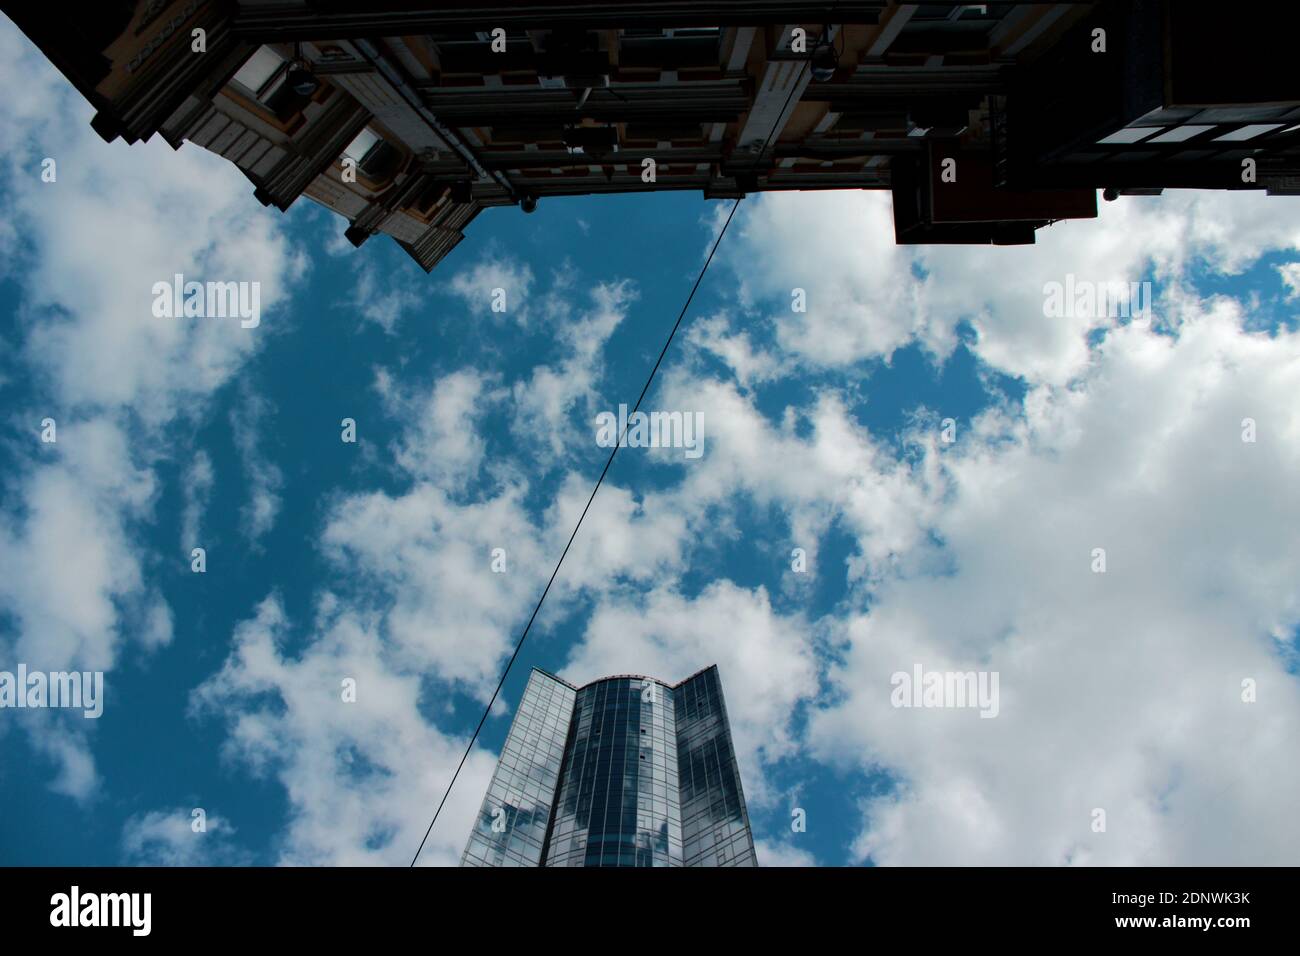 Bâtiments contre le ciel vue de dessous, ville, gratte-ciel. Photo de haute qualité Banque D'Images